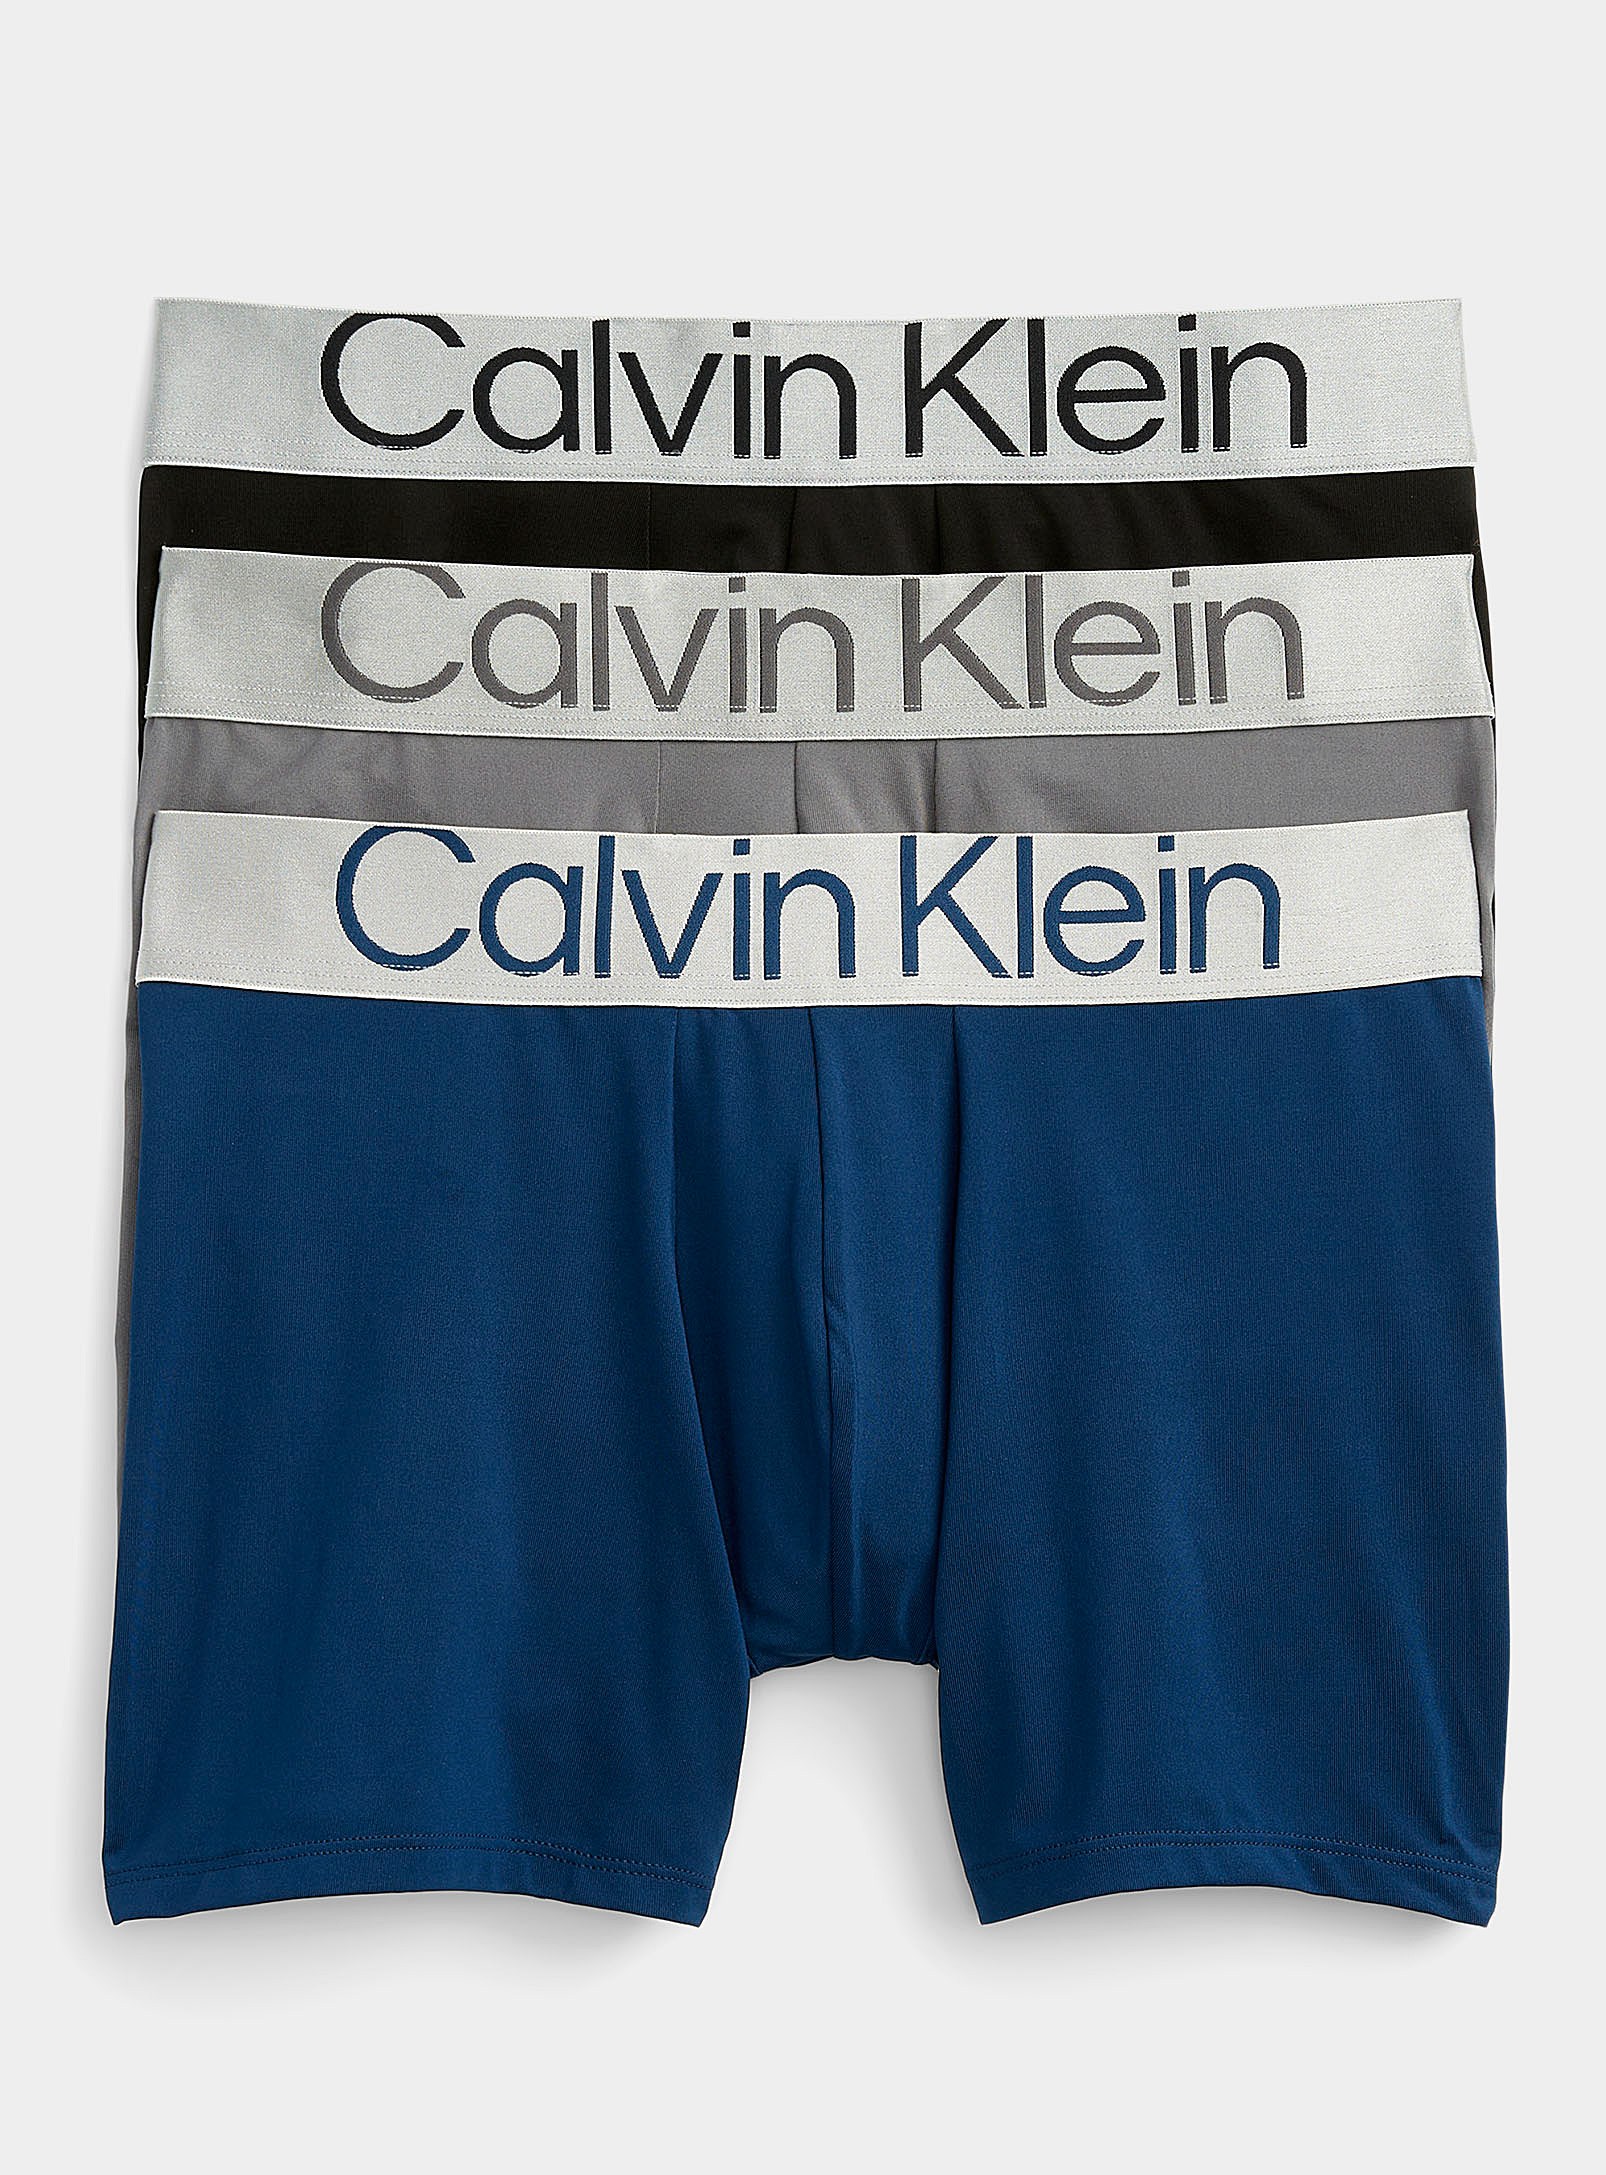 Calvin Klein Reconsidered Steel Silver-waist Boxer Briefs 3-pack